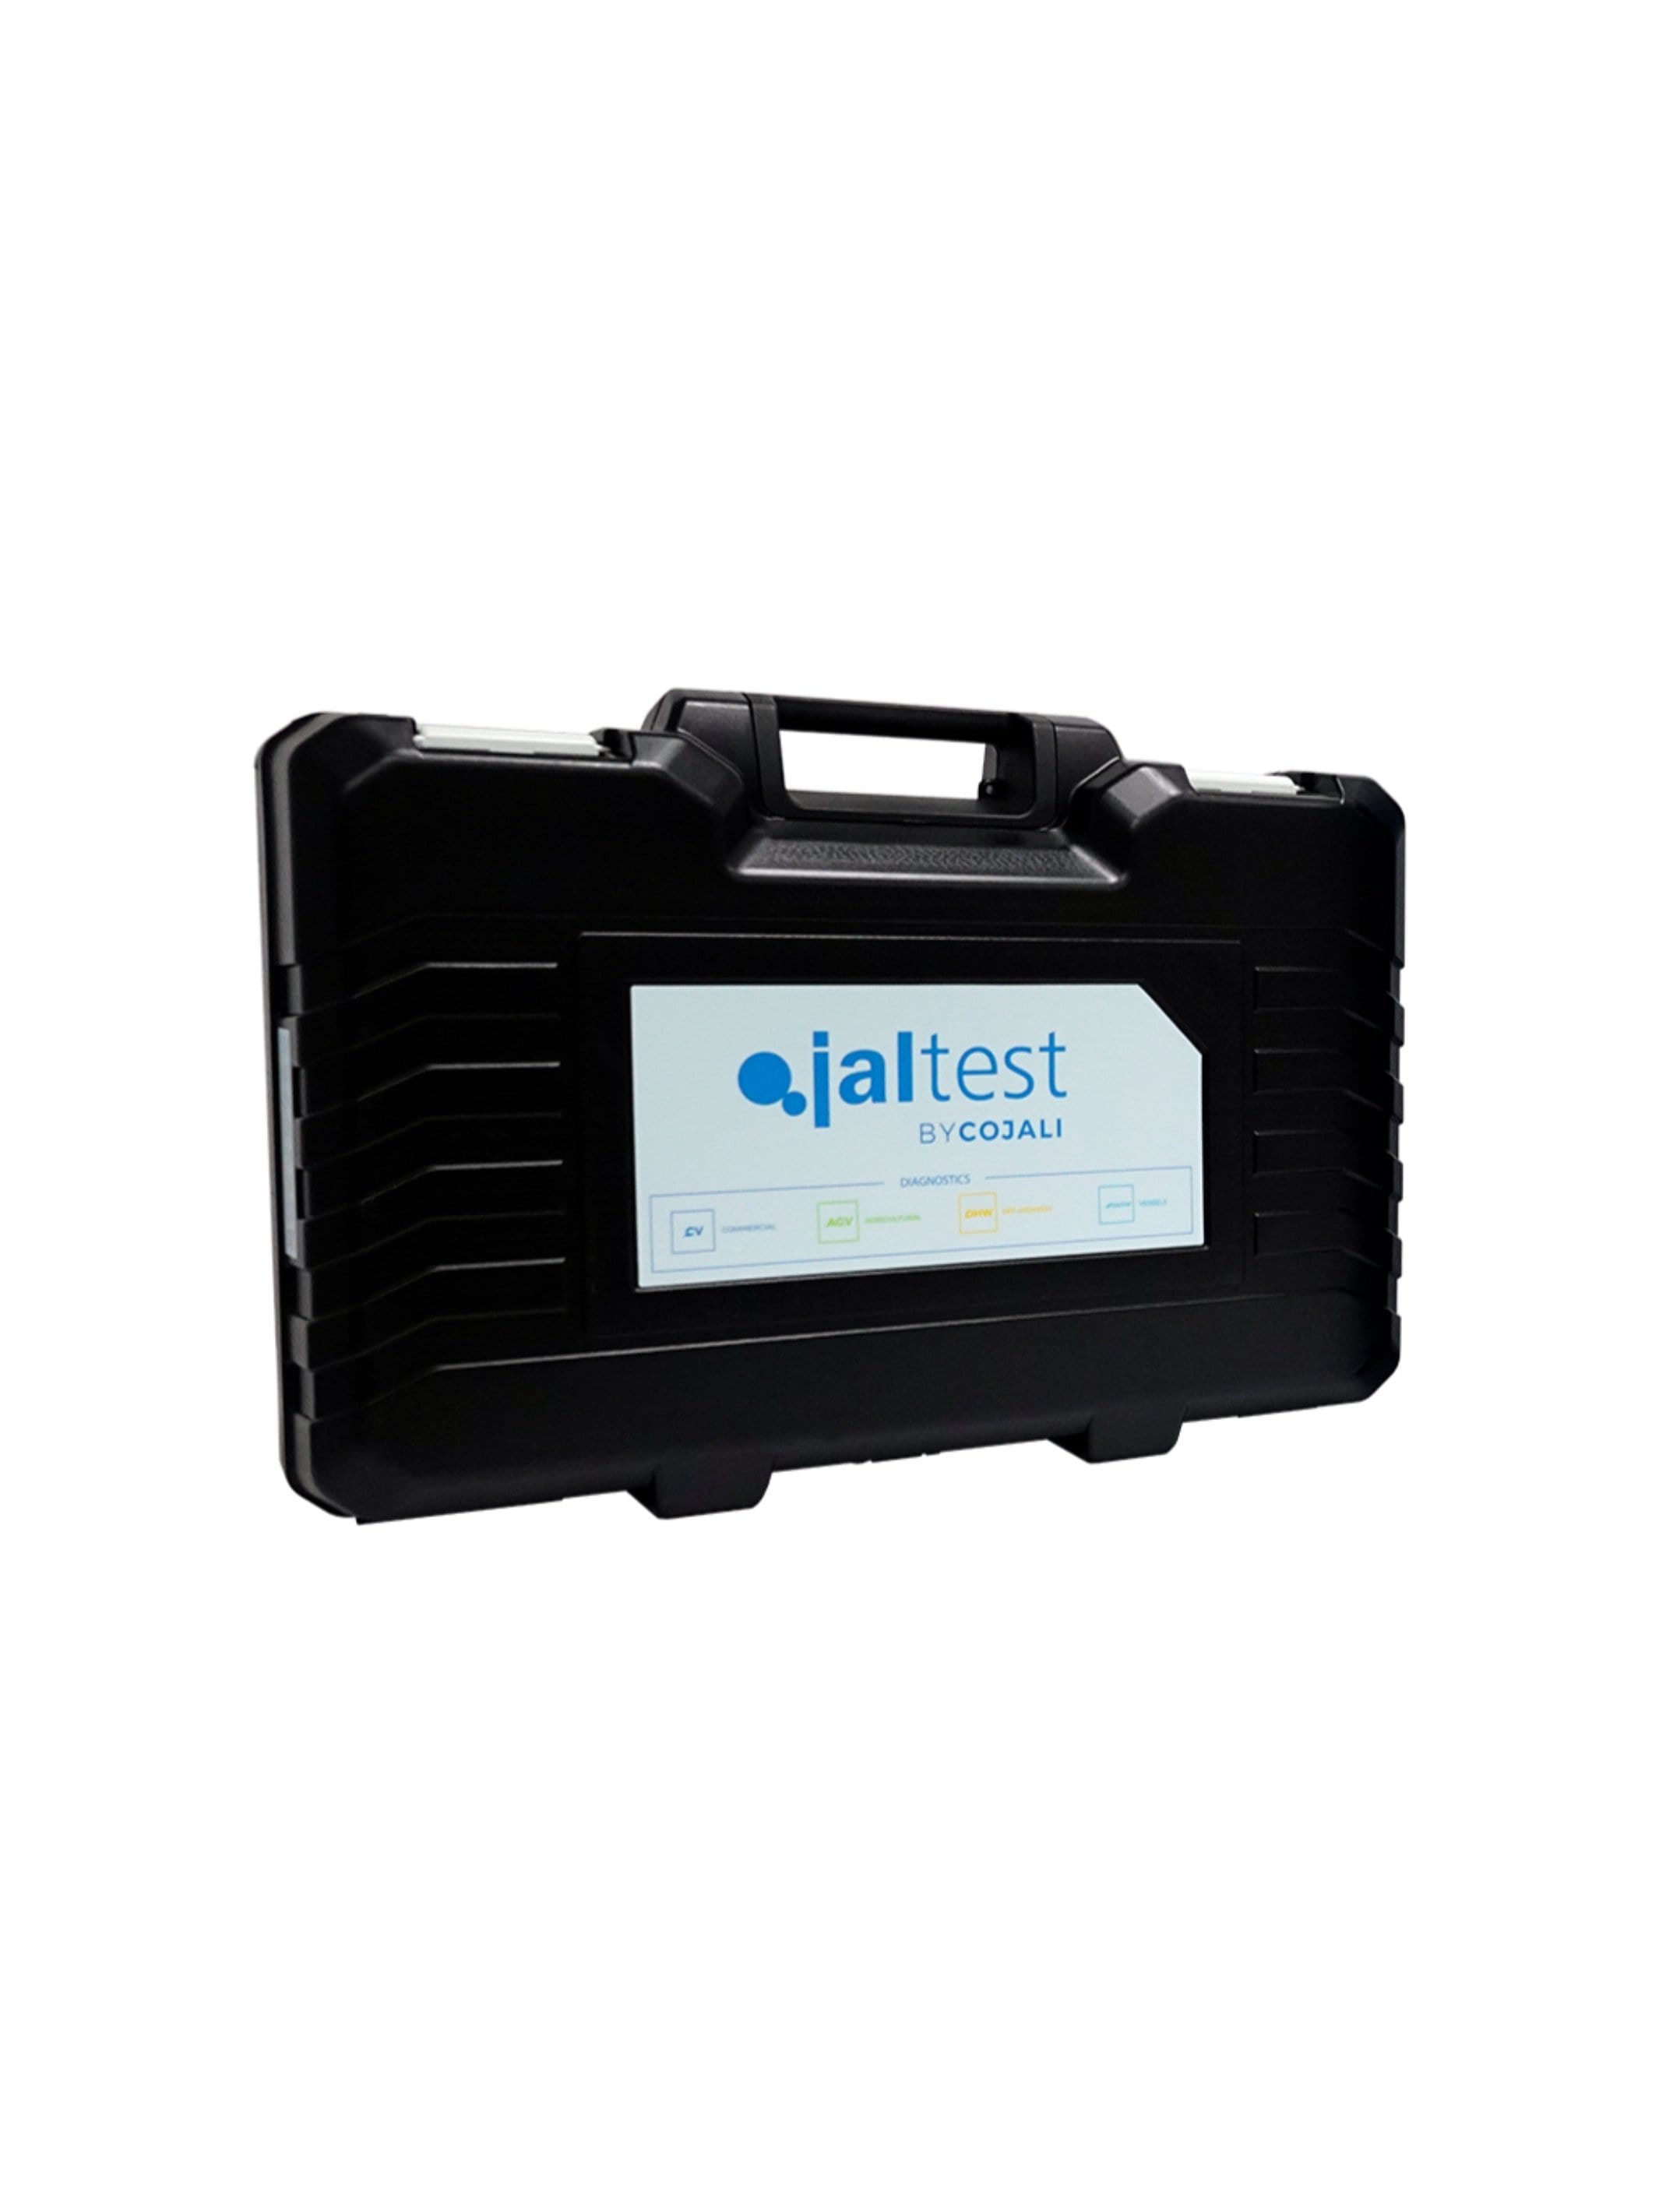 70003015 Transport Hardcase - Jaltest Marine Outboard Engine Diagnostic Tool Kit